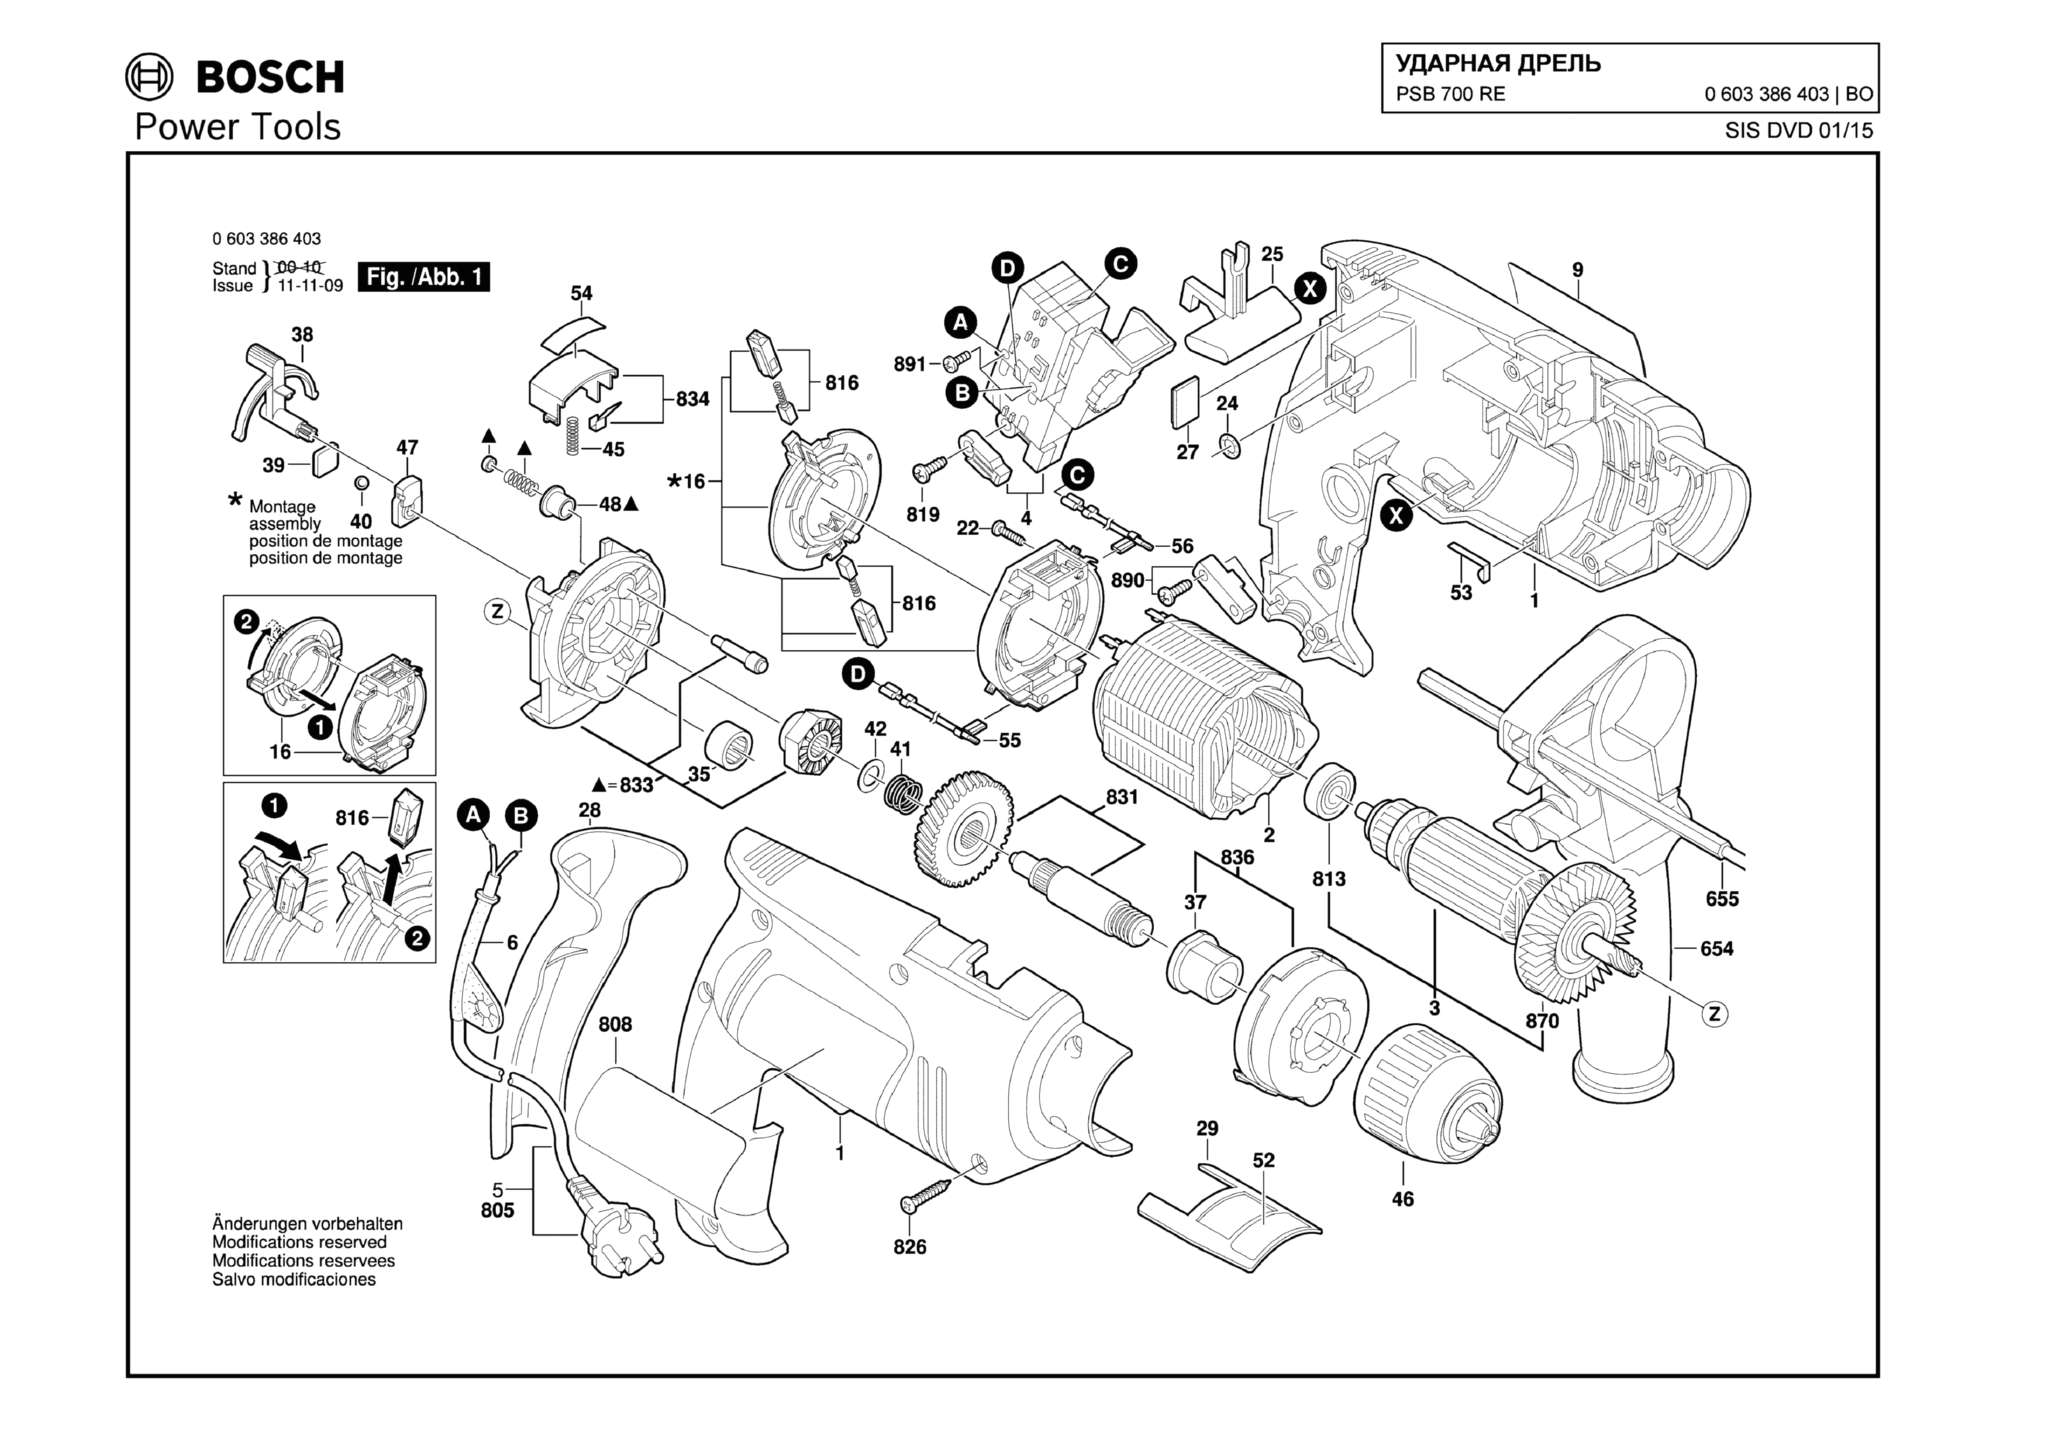 Запчасти, схема и деталировка Bosch PSB 700 RE (ТИП 0603386403)